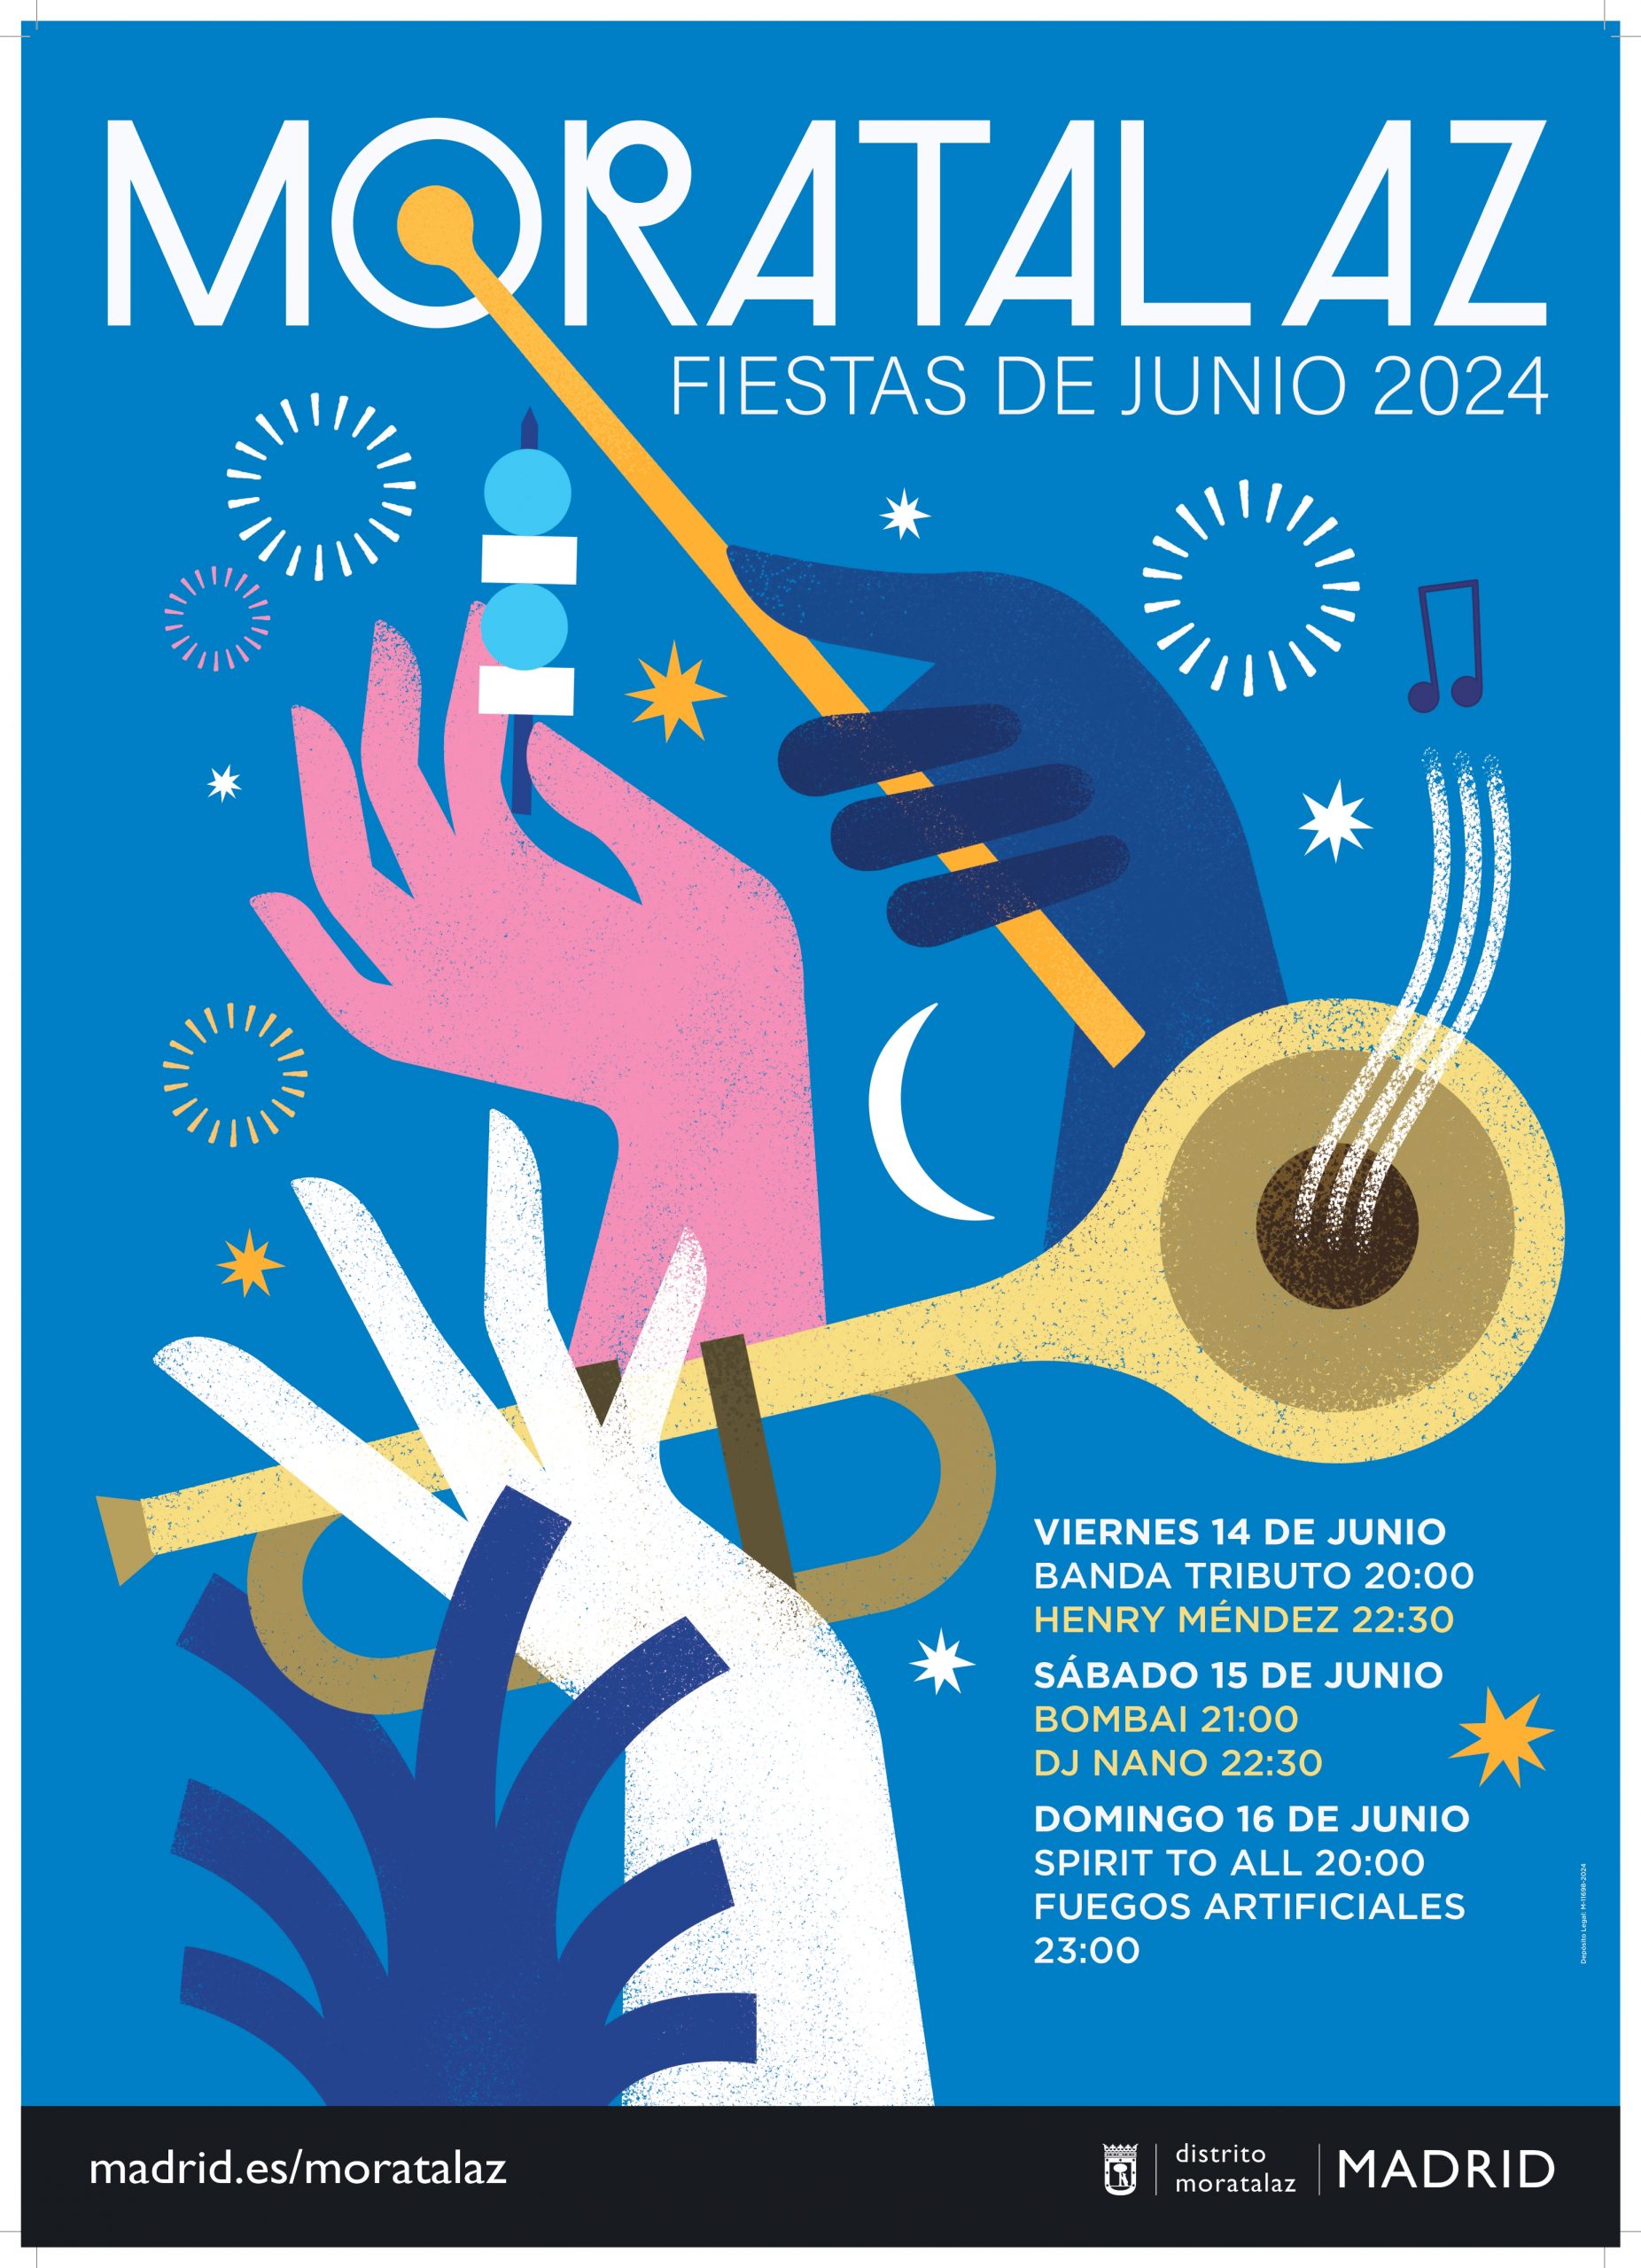 Programación de conciertos de las Fiestas de Moratalaz 2024, este junio en Madrid